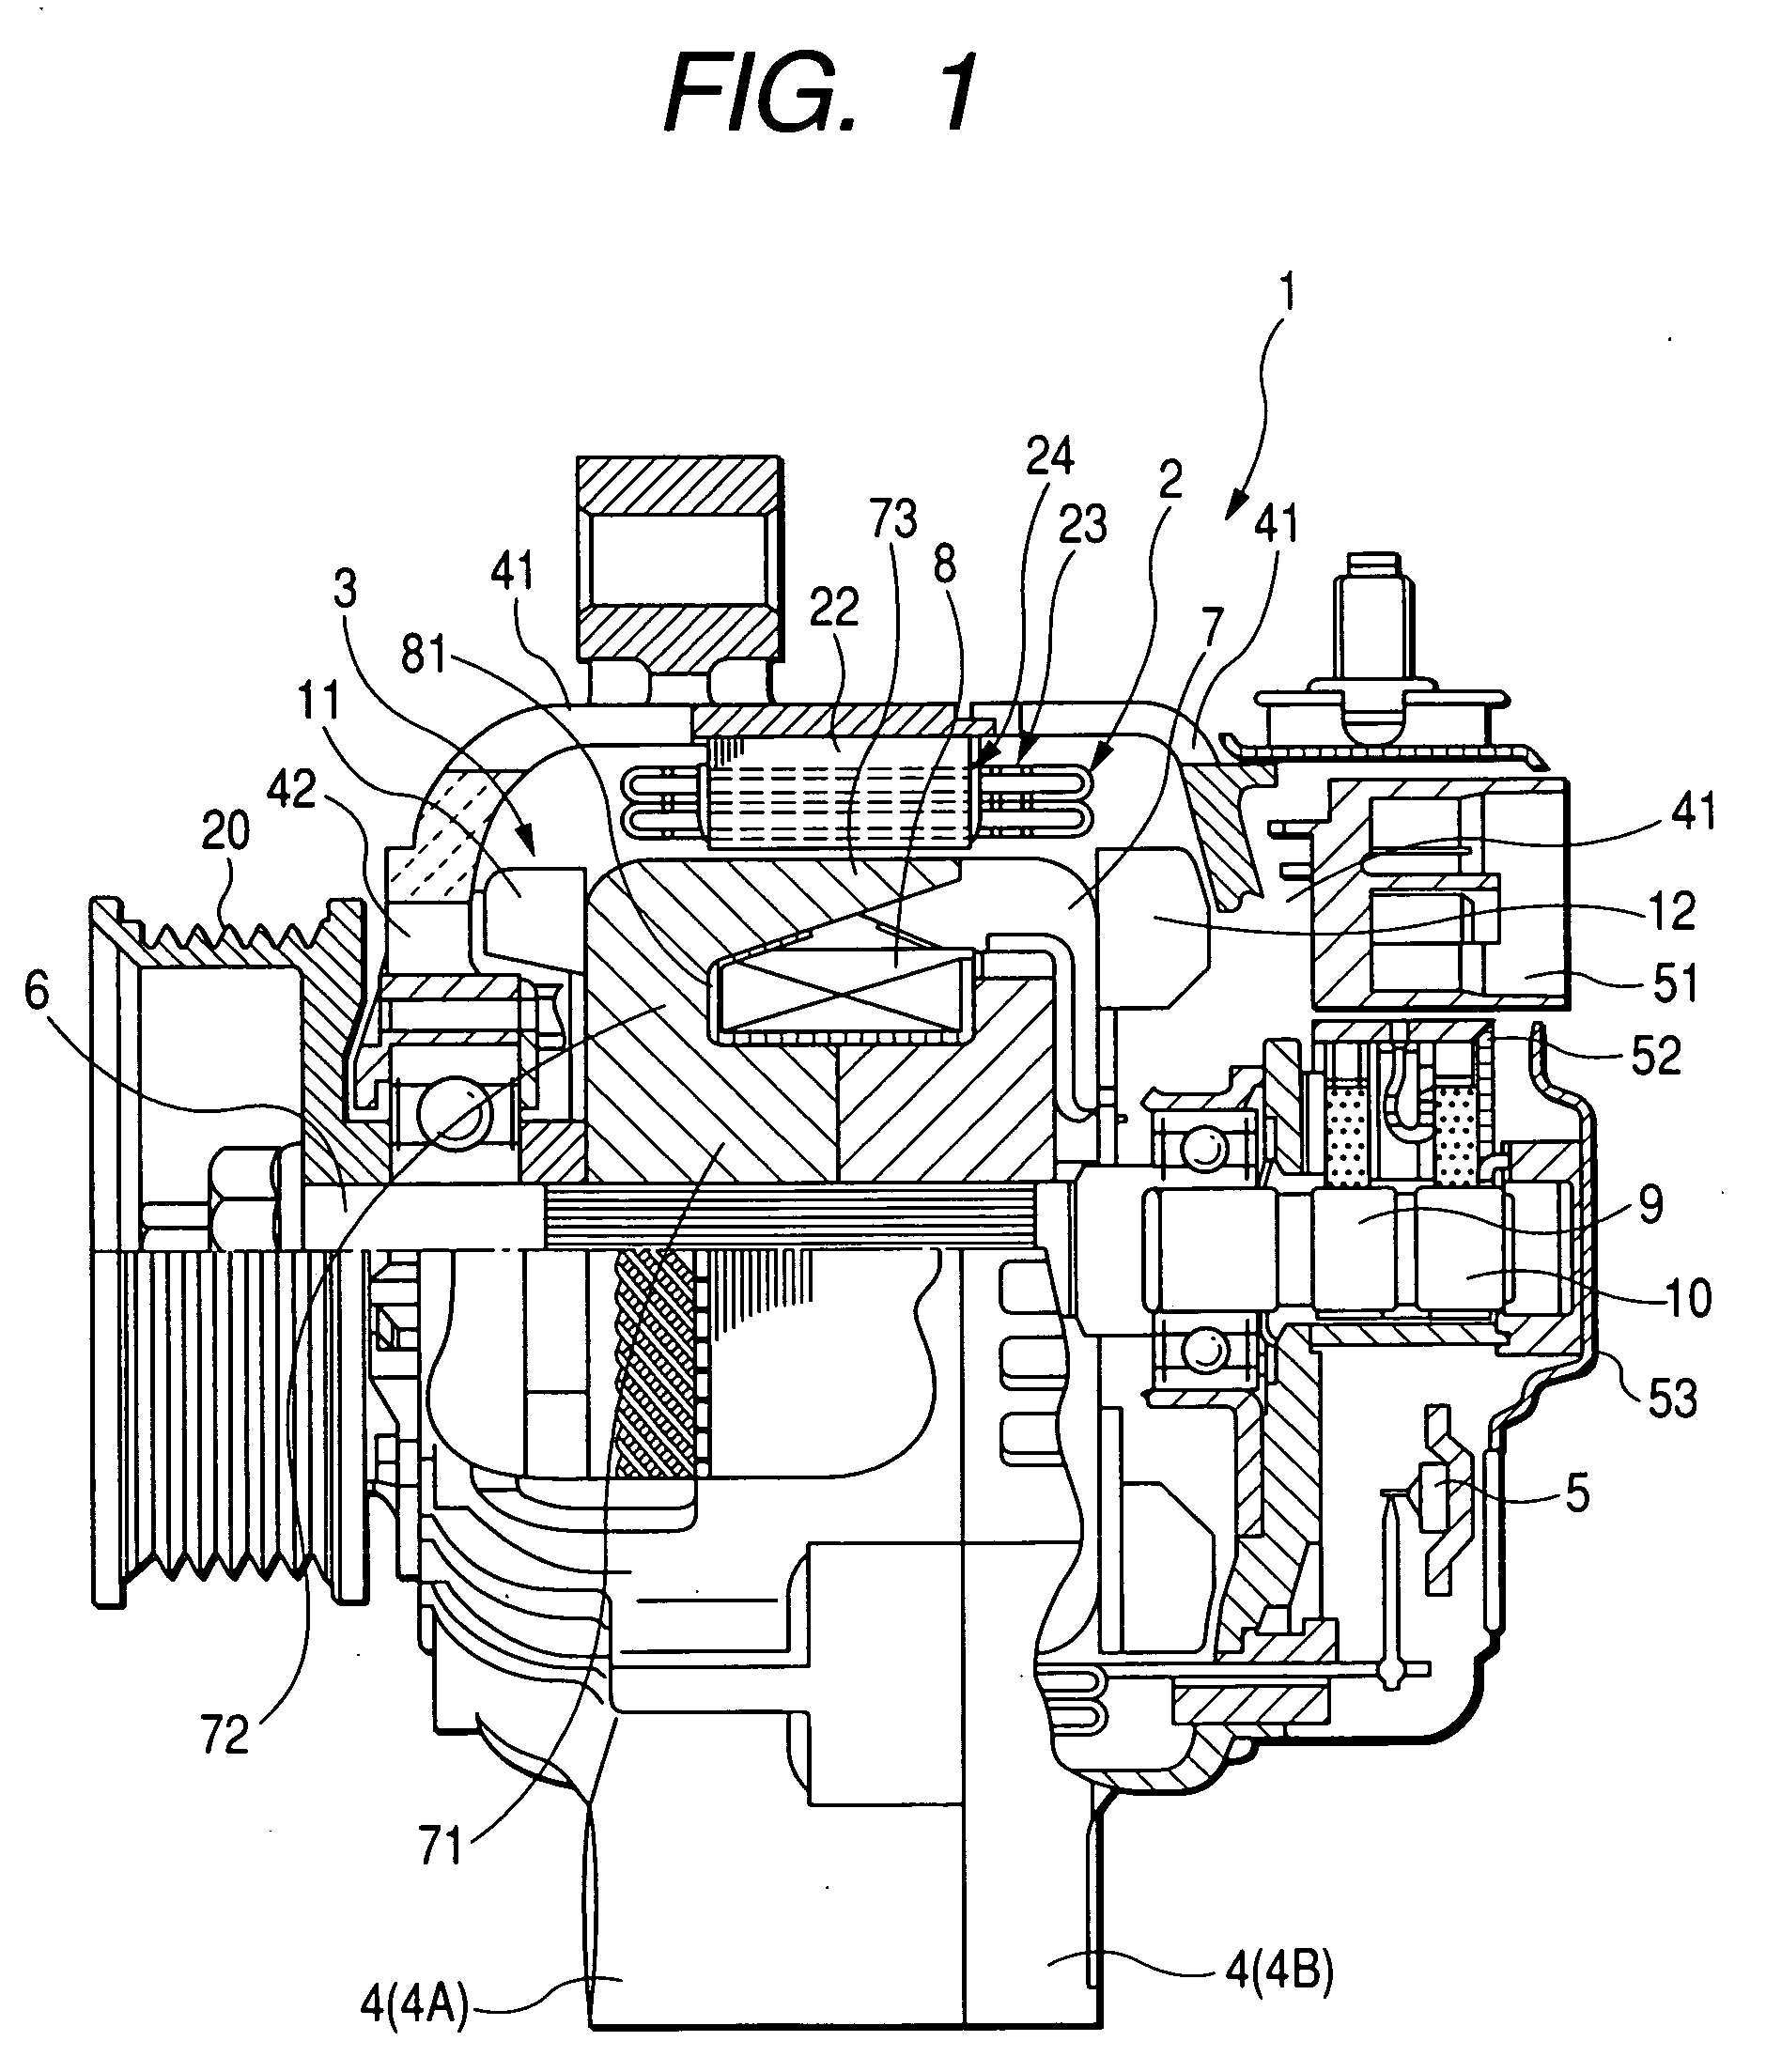 Structure of automotive alternator